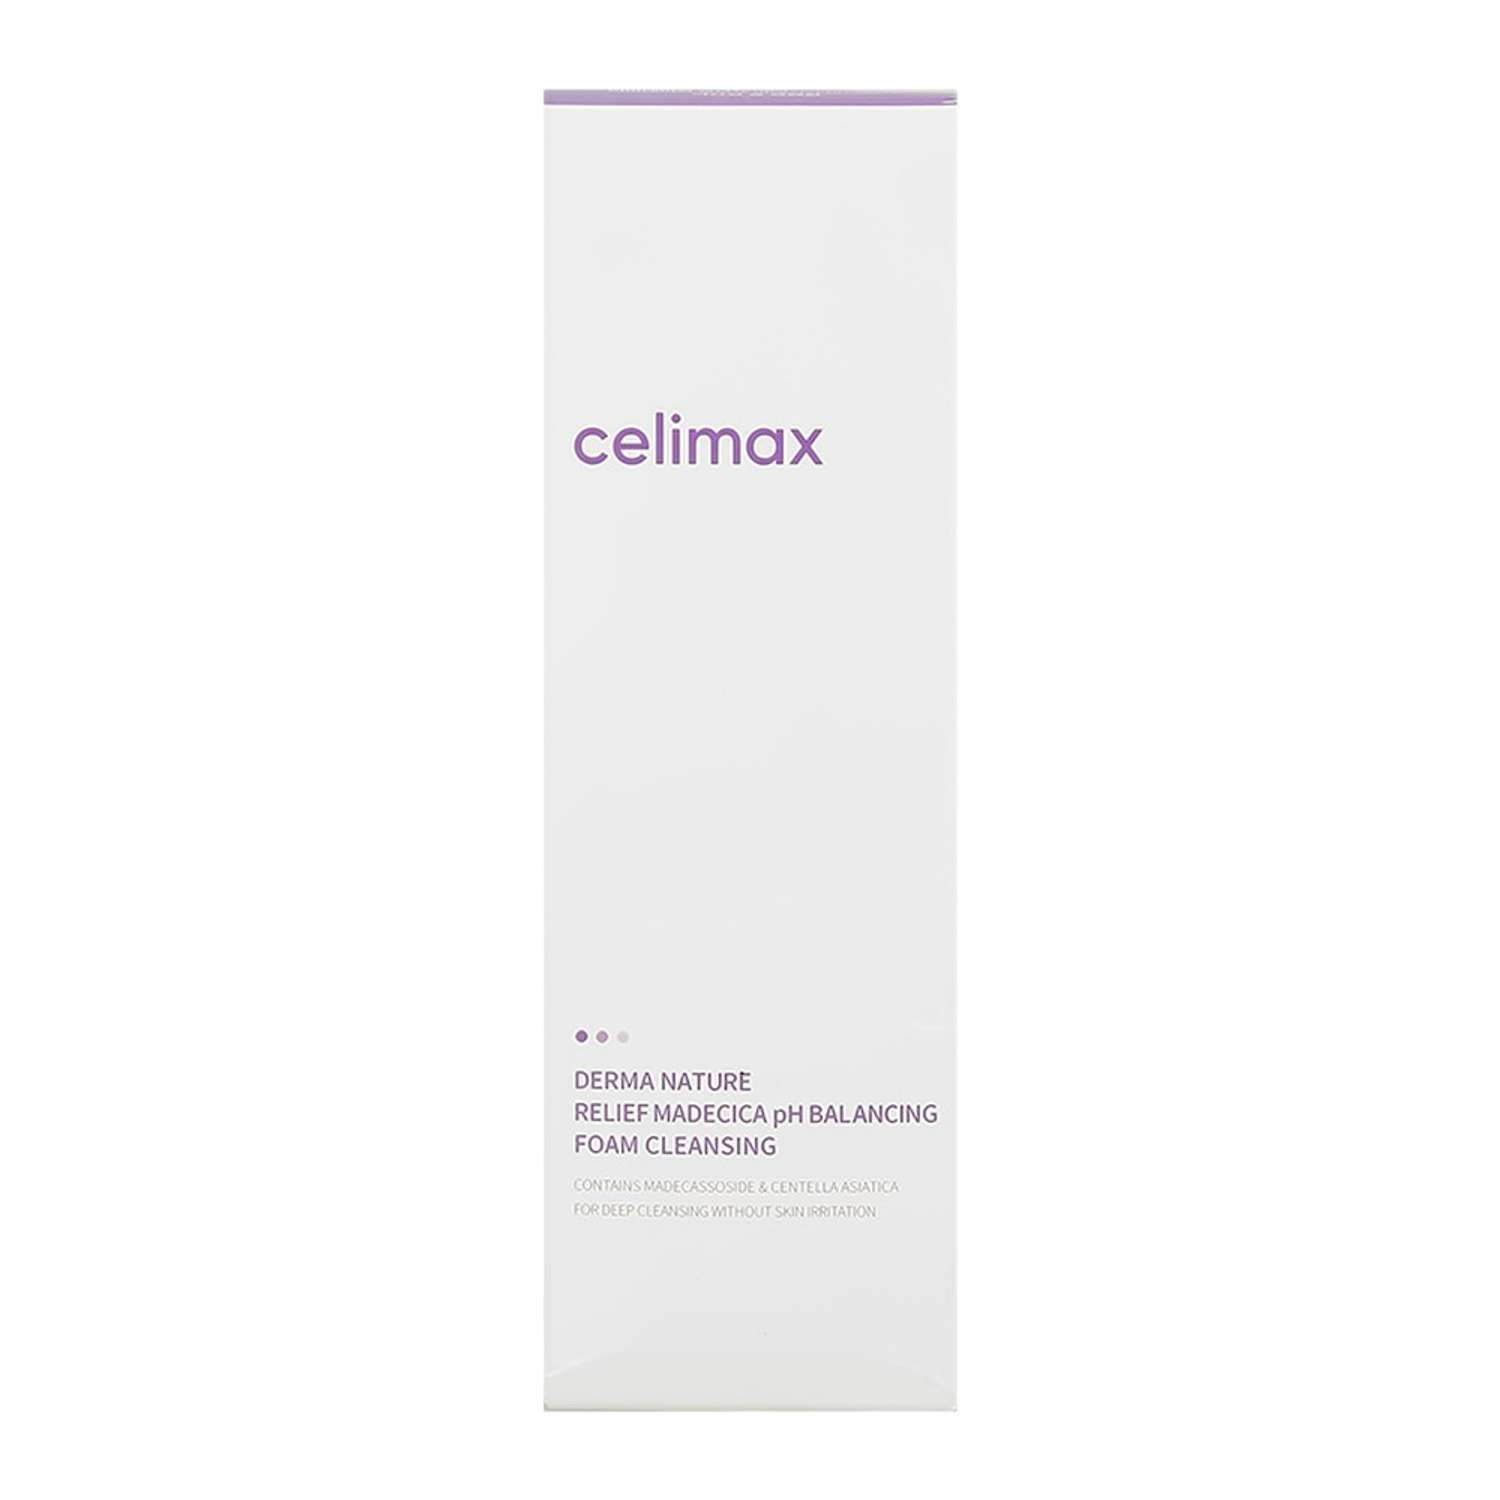 Пенка для умывания Celimax слабокислотная 150 мл - фото 8